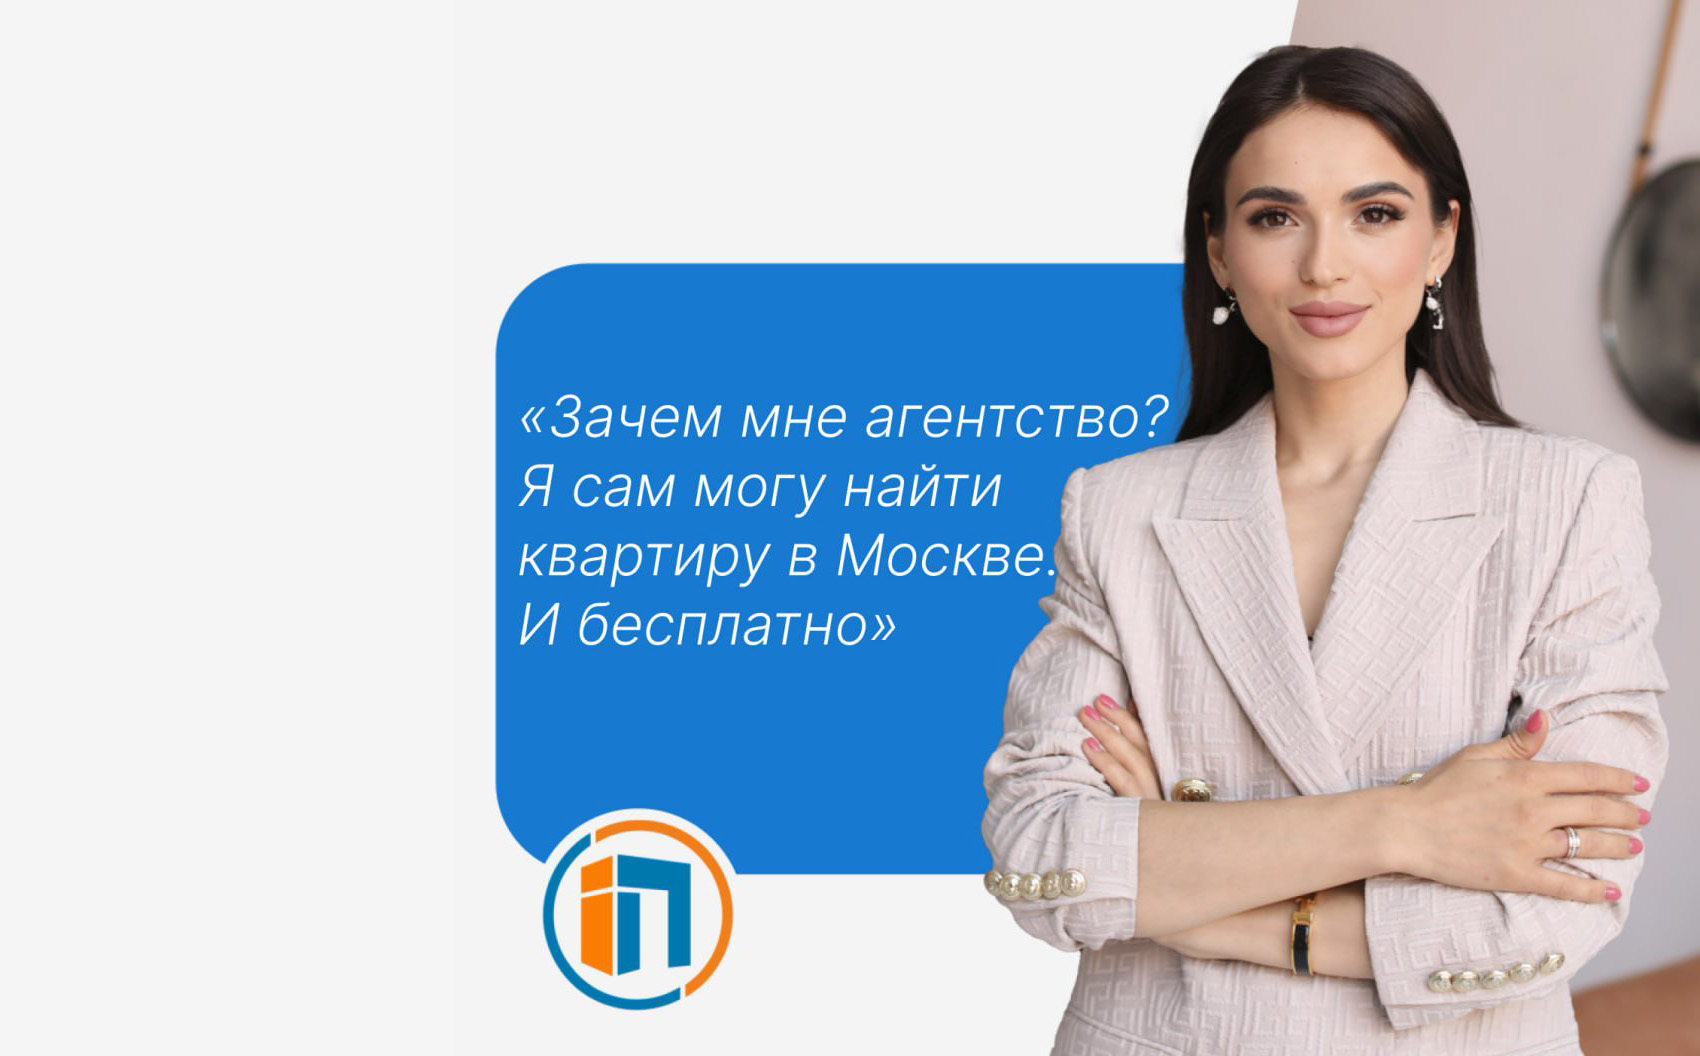 Как подобрать квартиру в Москве или Московской области, не оплачивая услуги агентства?